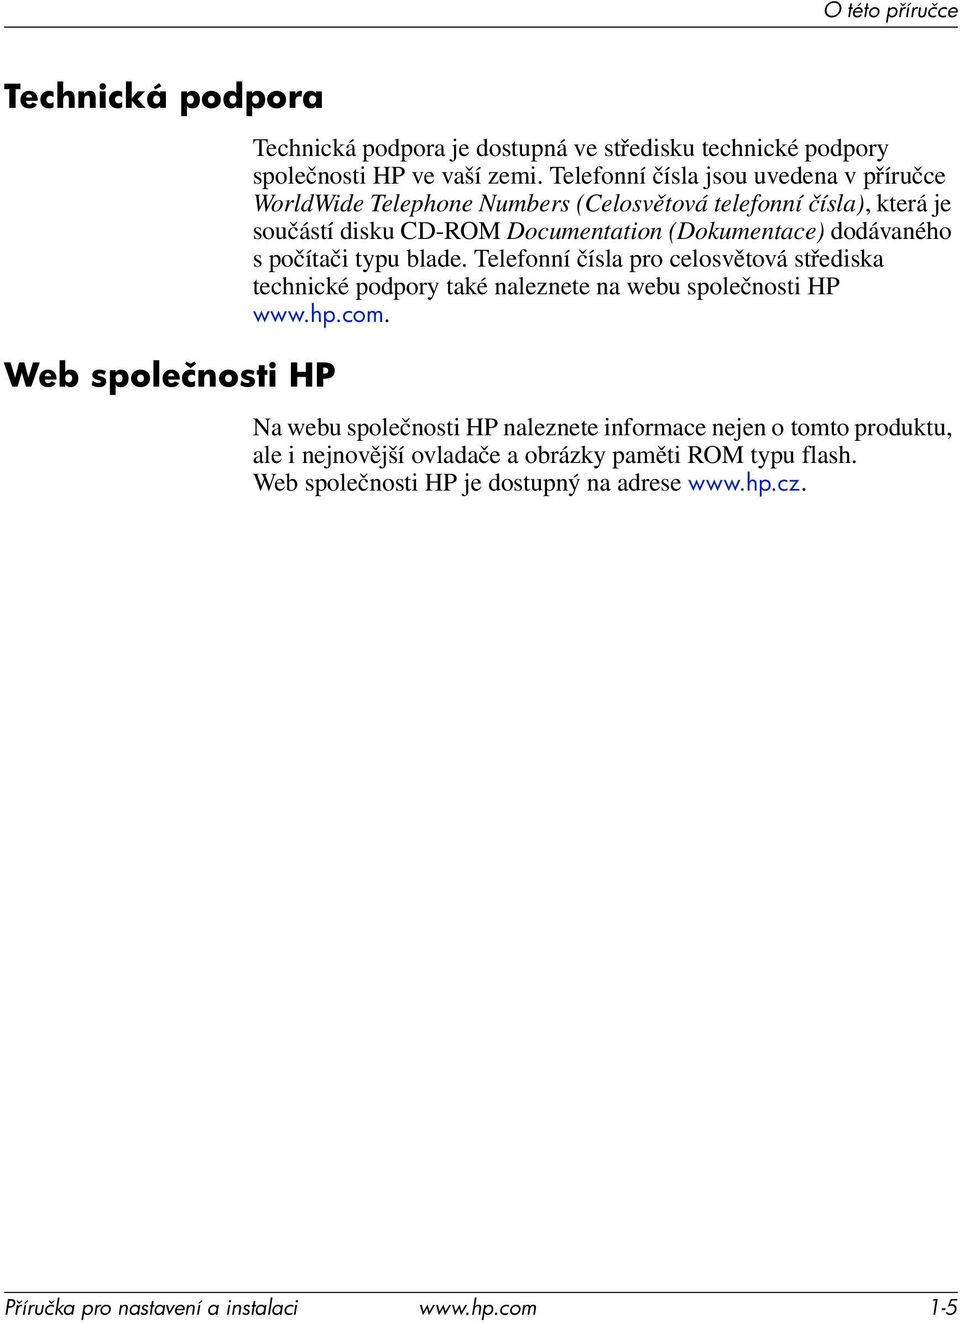 dodávaného s počítači typu blade. Telefonní čísla pro celosvětová střediska technické podpory také naleznete na webu společnosti HP www.hp.com.